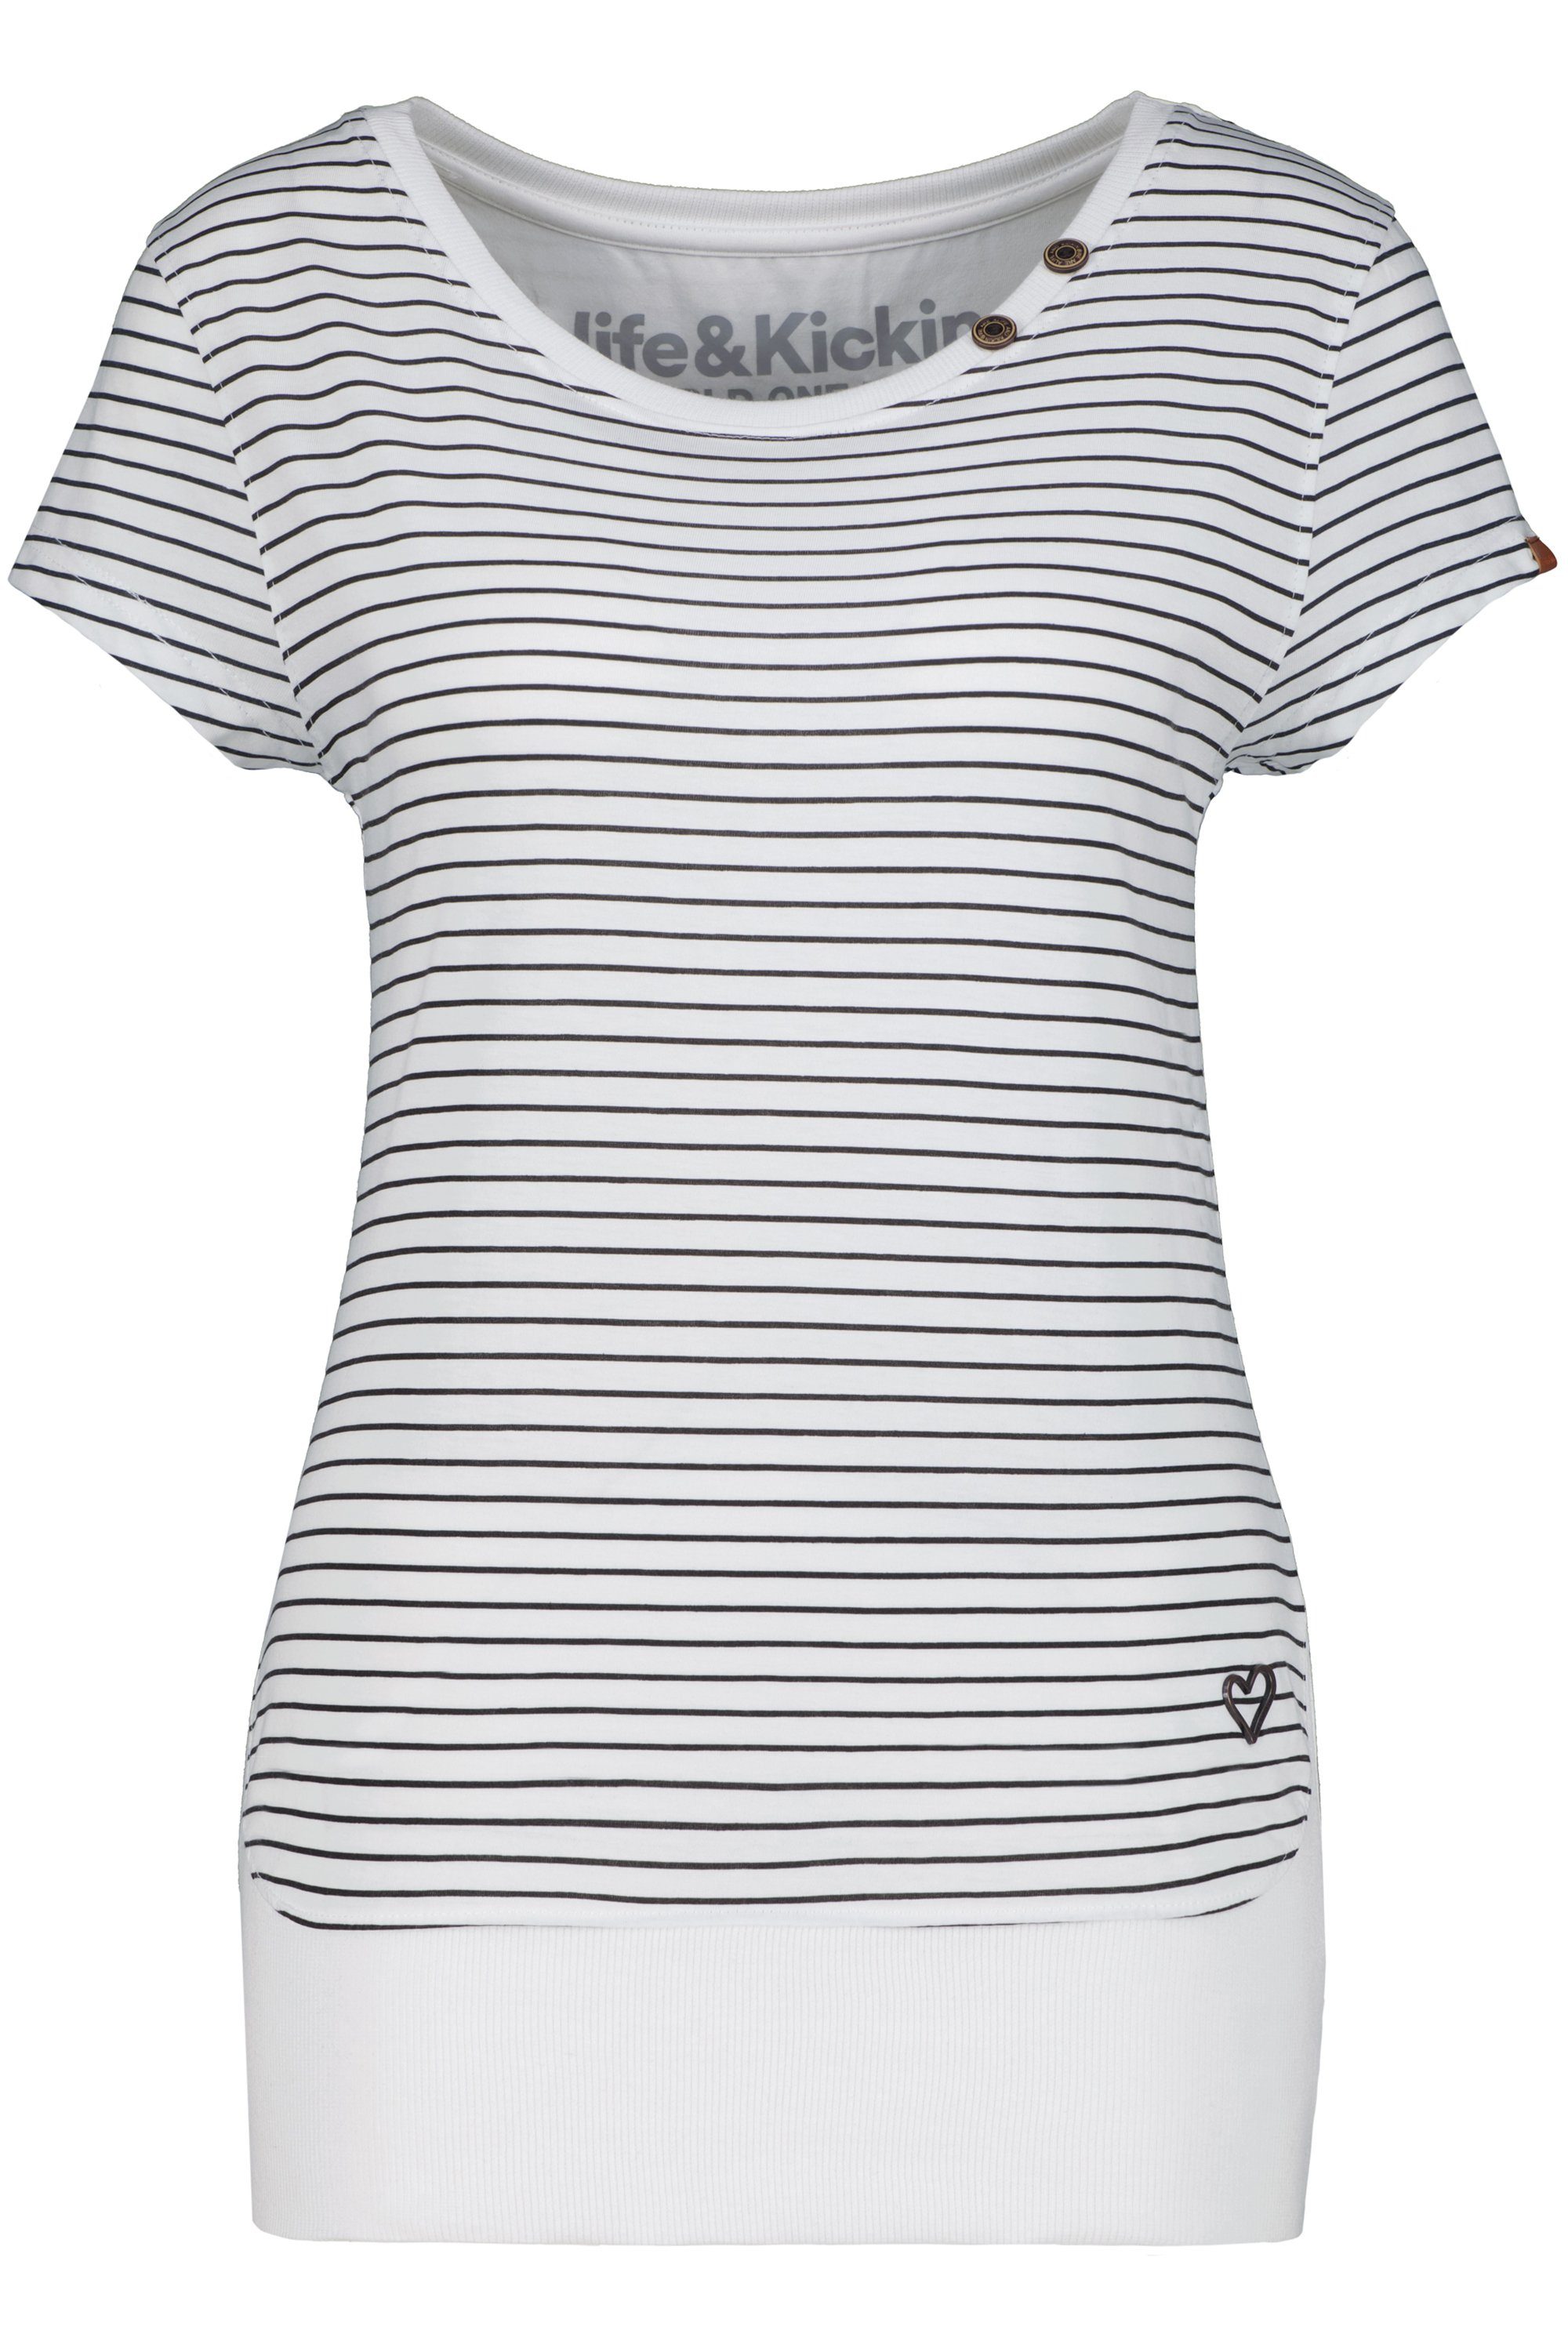 Alife Damen Z Shirt CocoAK T-Shirt white & T-Shirt Kickin